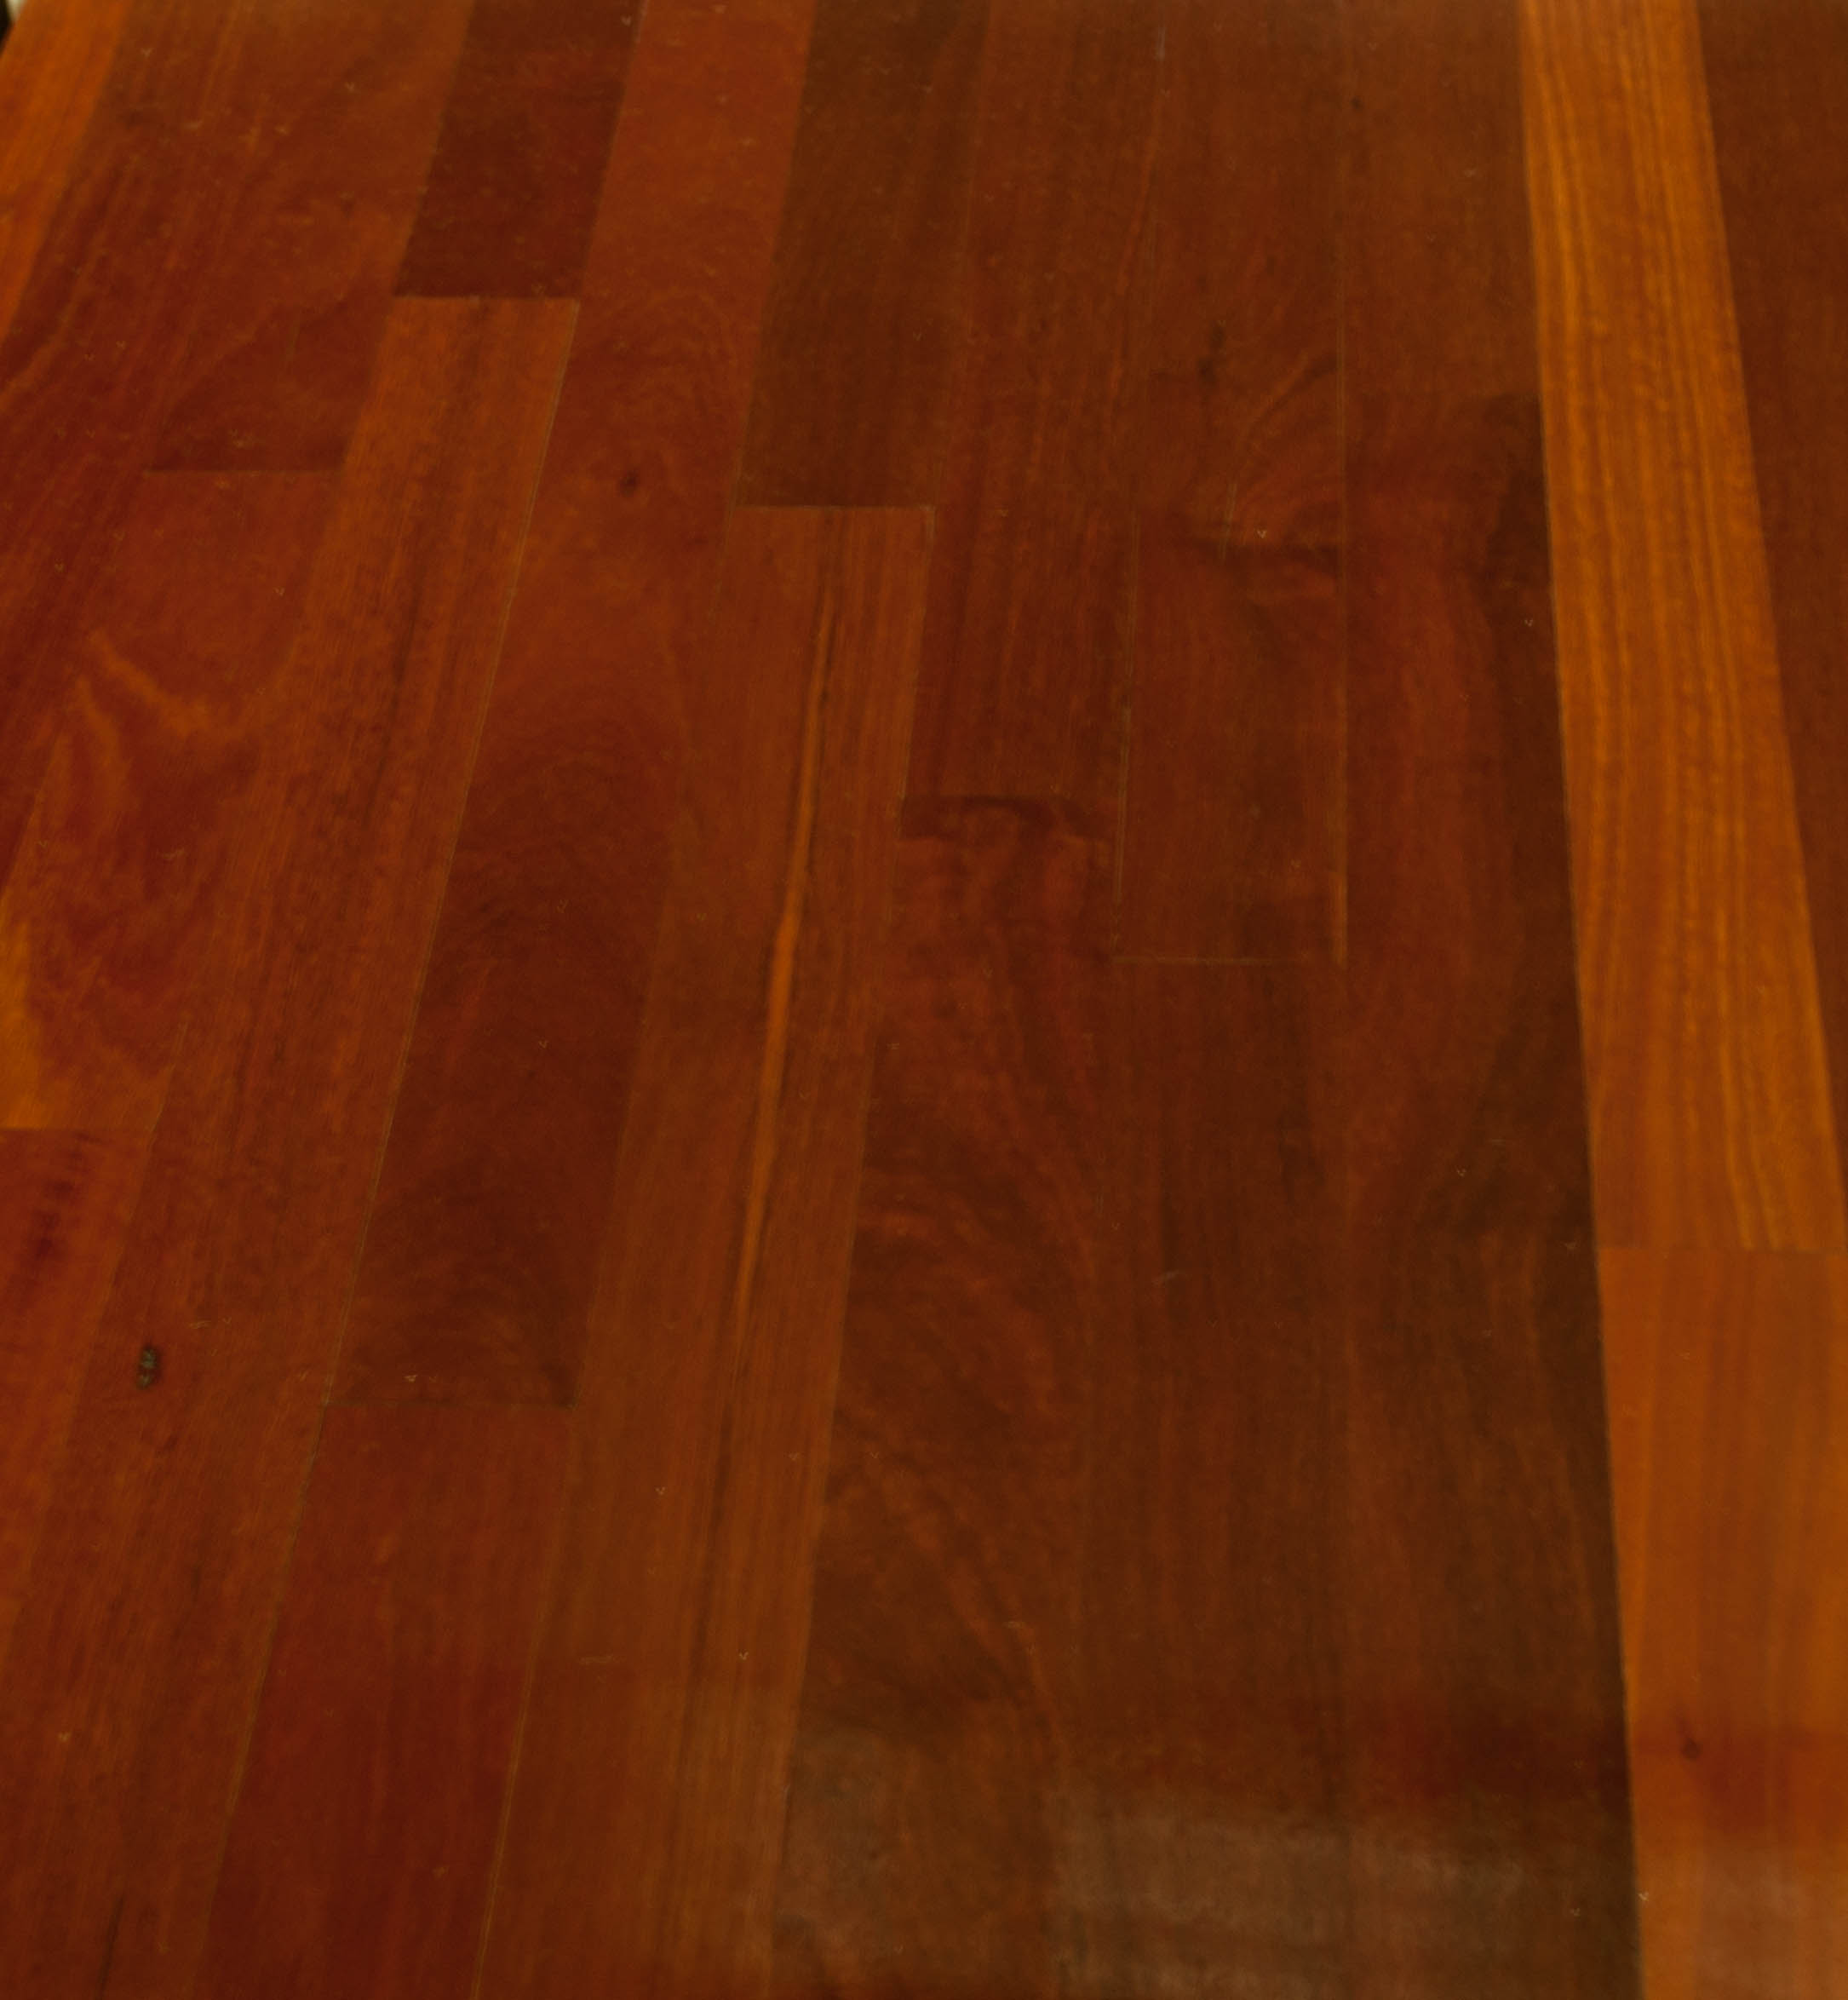 showing a deep orange red timber species hardwood floor.